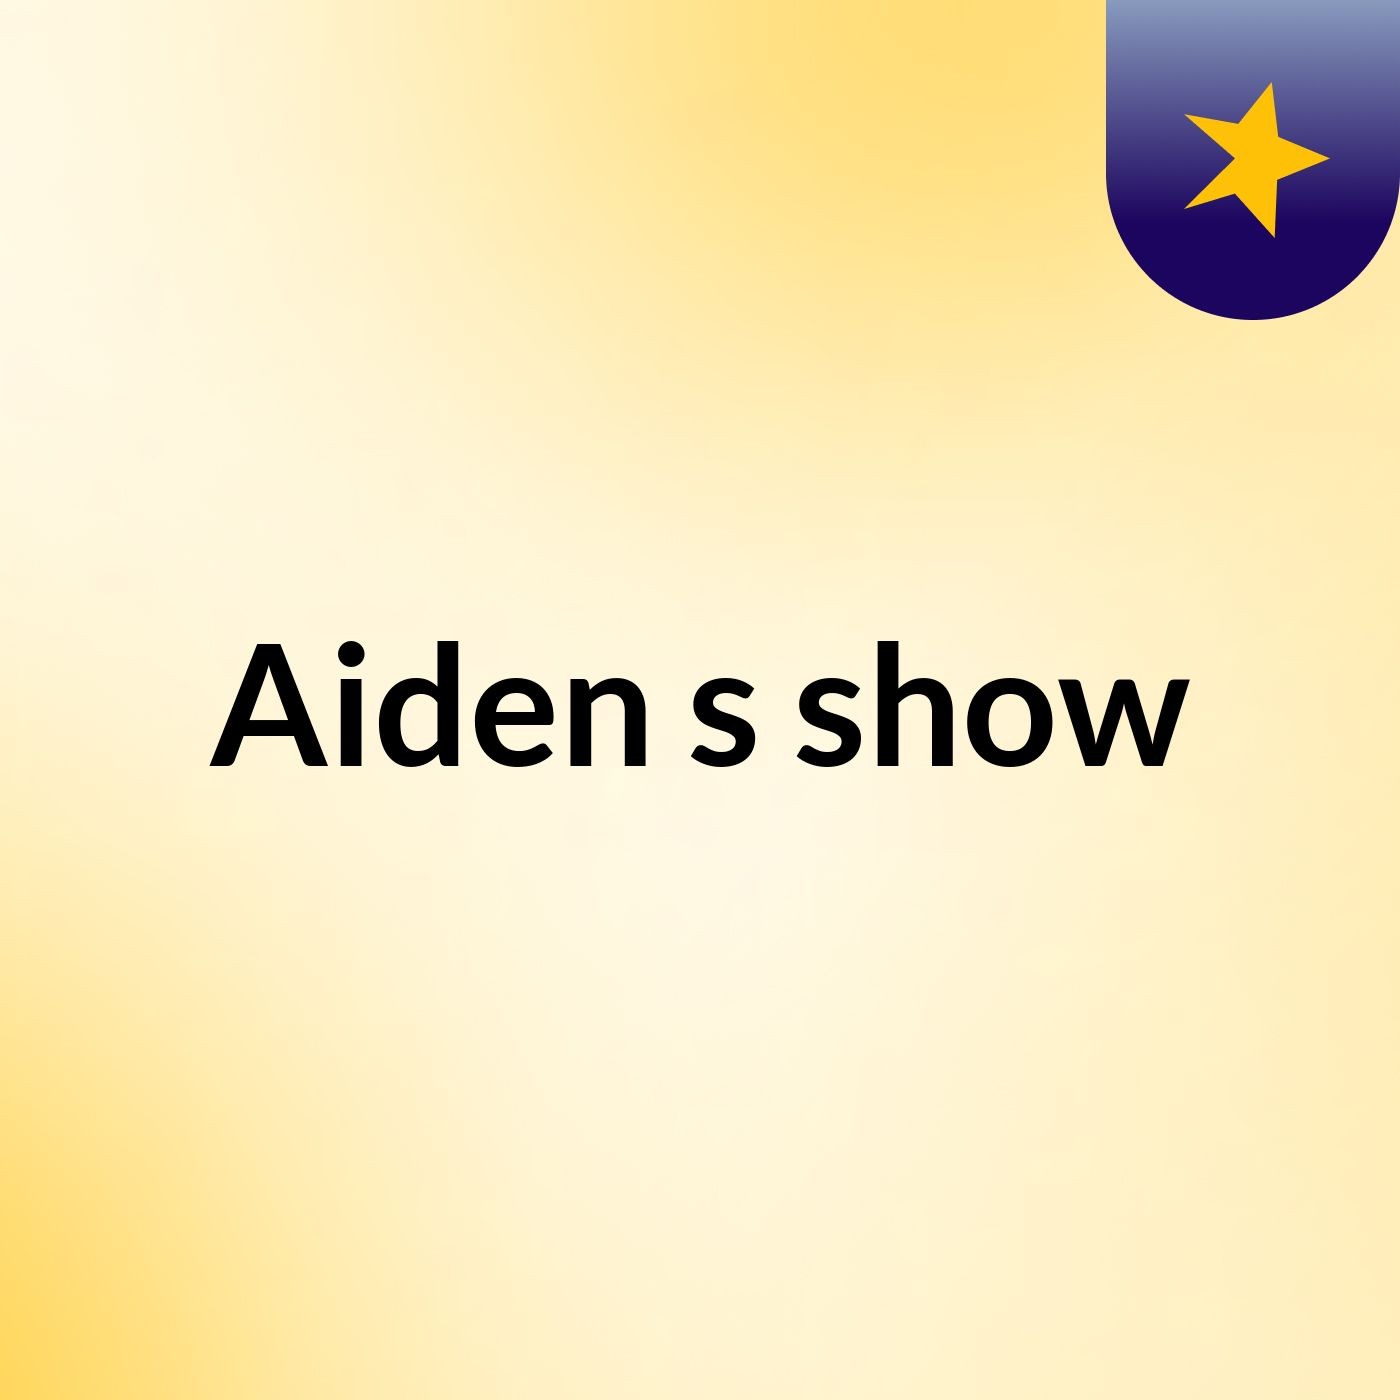 Aiden's show